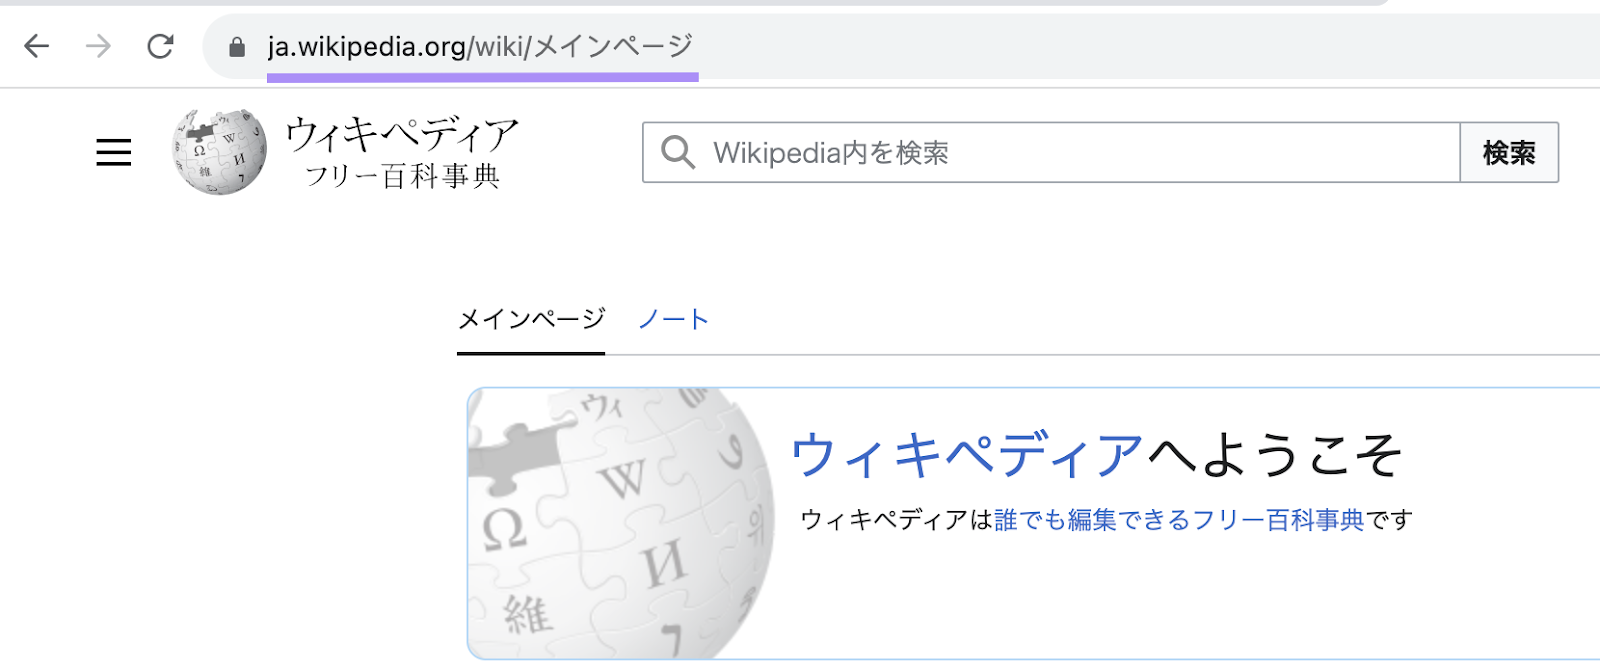 "ja.wikipedia.org" subdomain